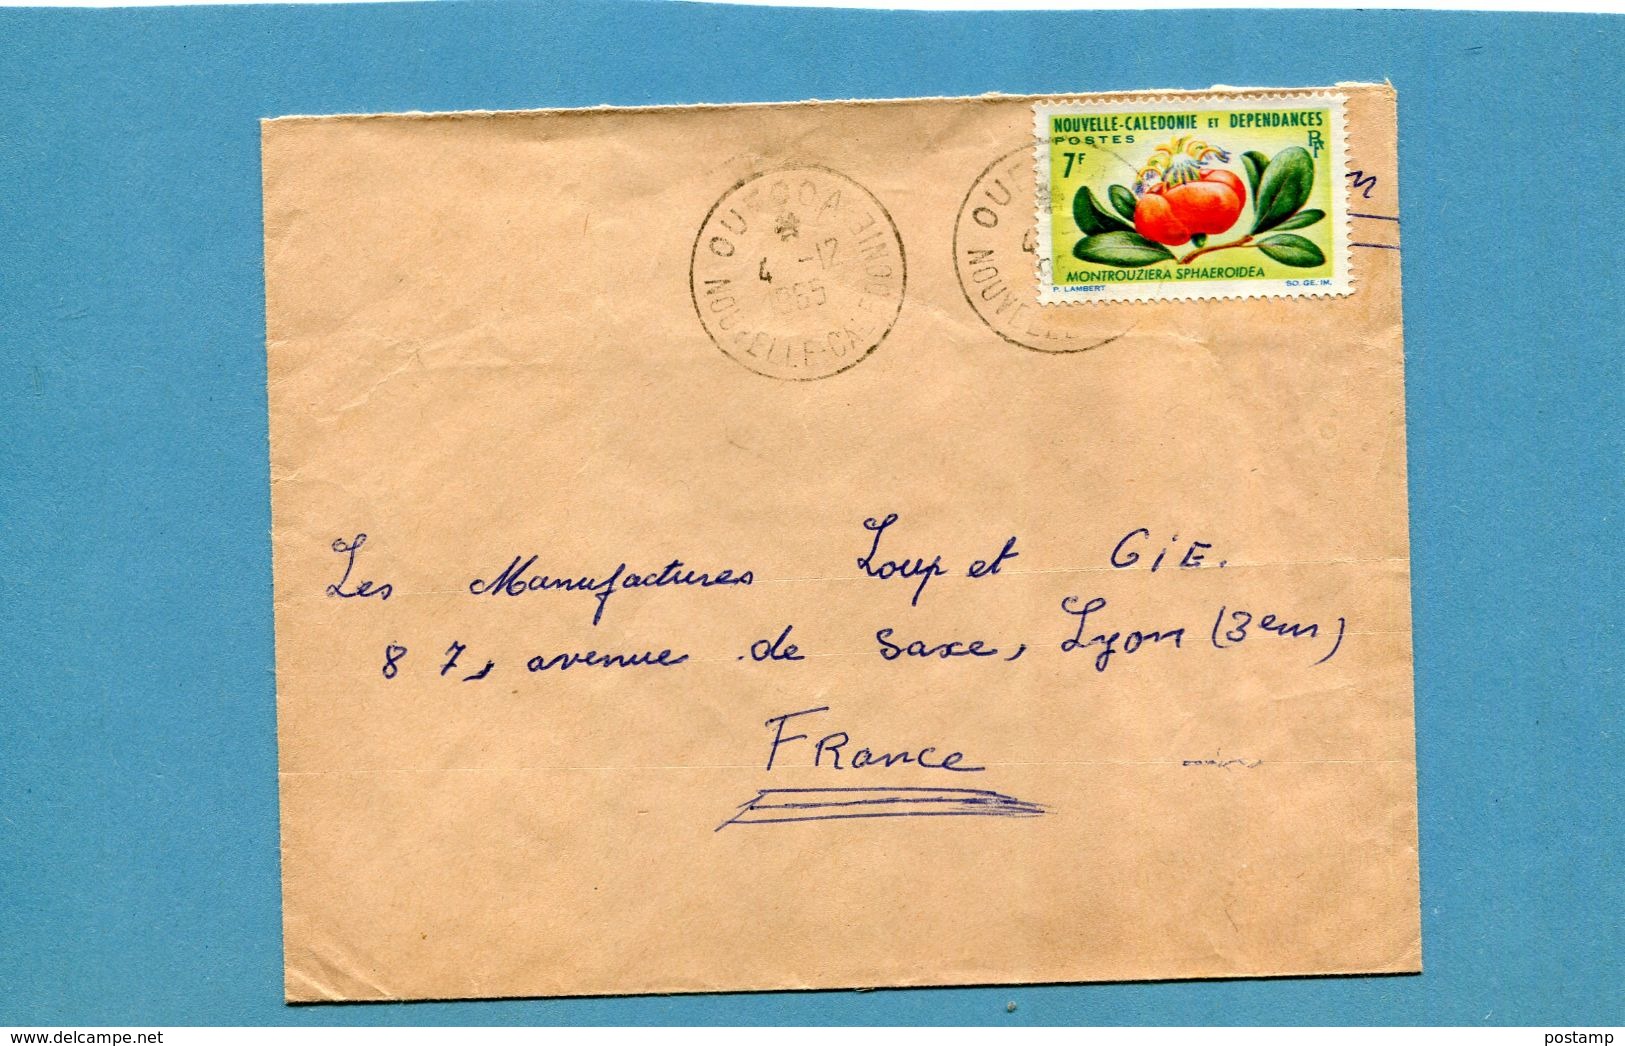 Marcophilie Nouvelle Calédonie-lettre  >Françe-cad OUECOA 1965- Stamps N°319 Flower-montrouziera - Briefe U. Dokumente